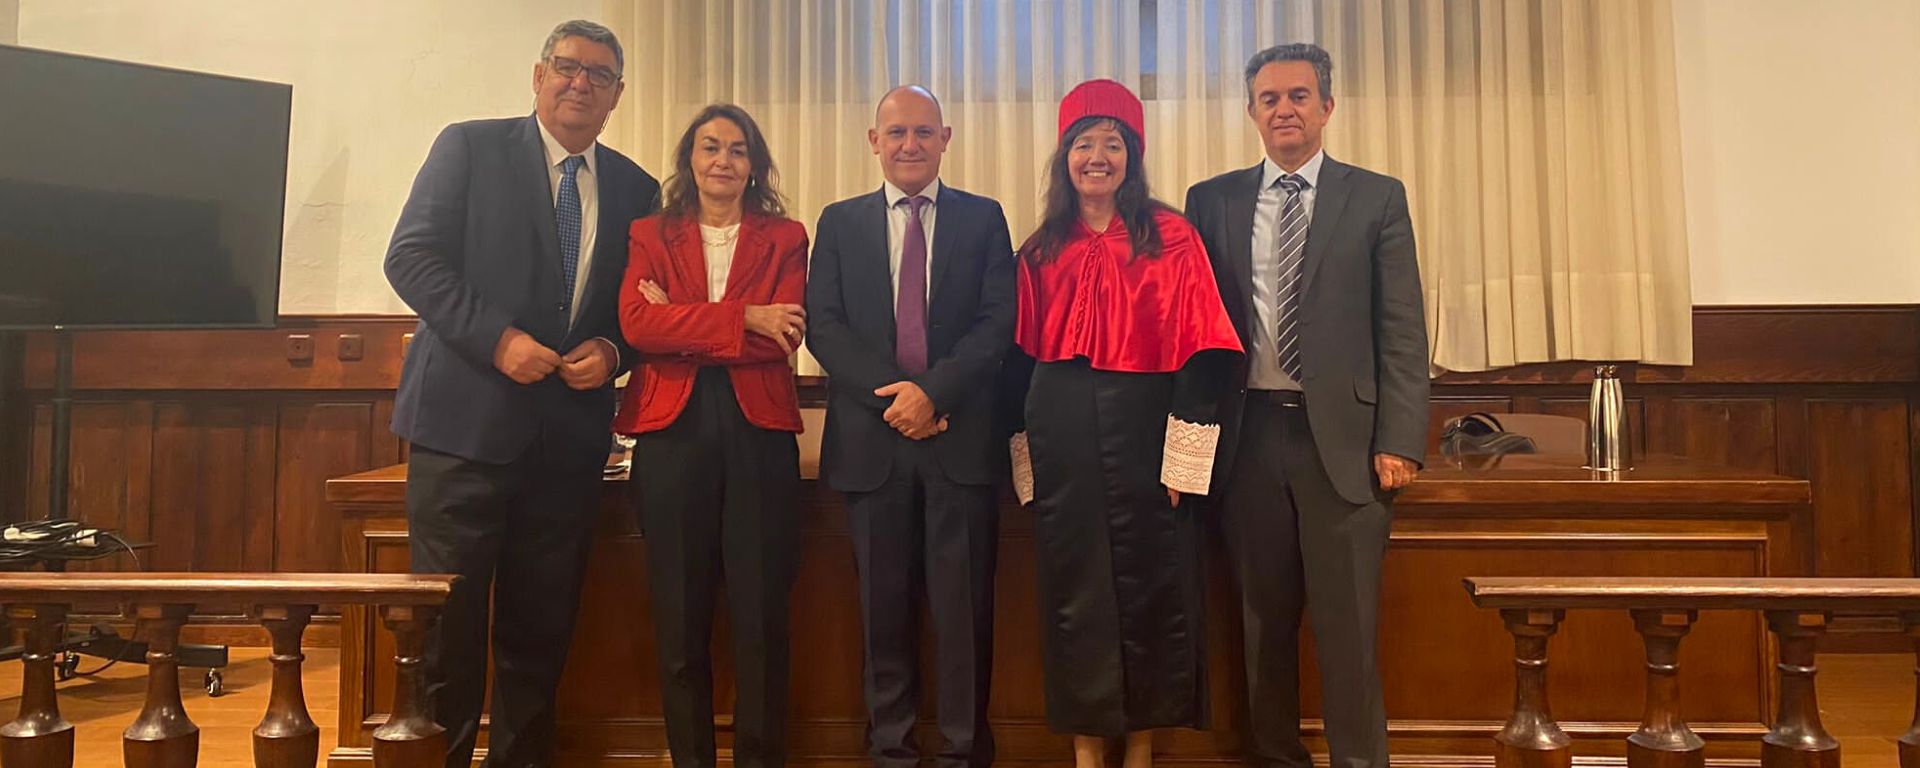 Andrea Signorino posa con tribunal y decano de la Universidad de Salamanca